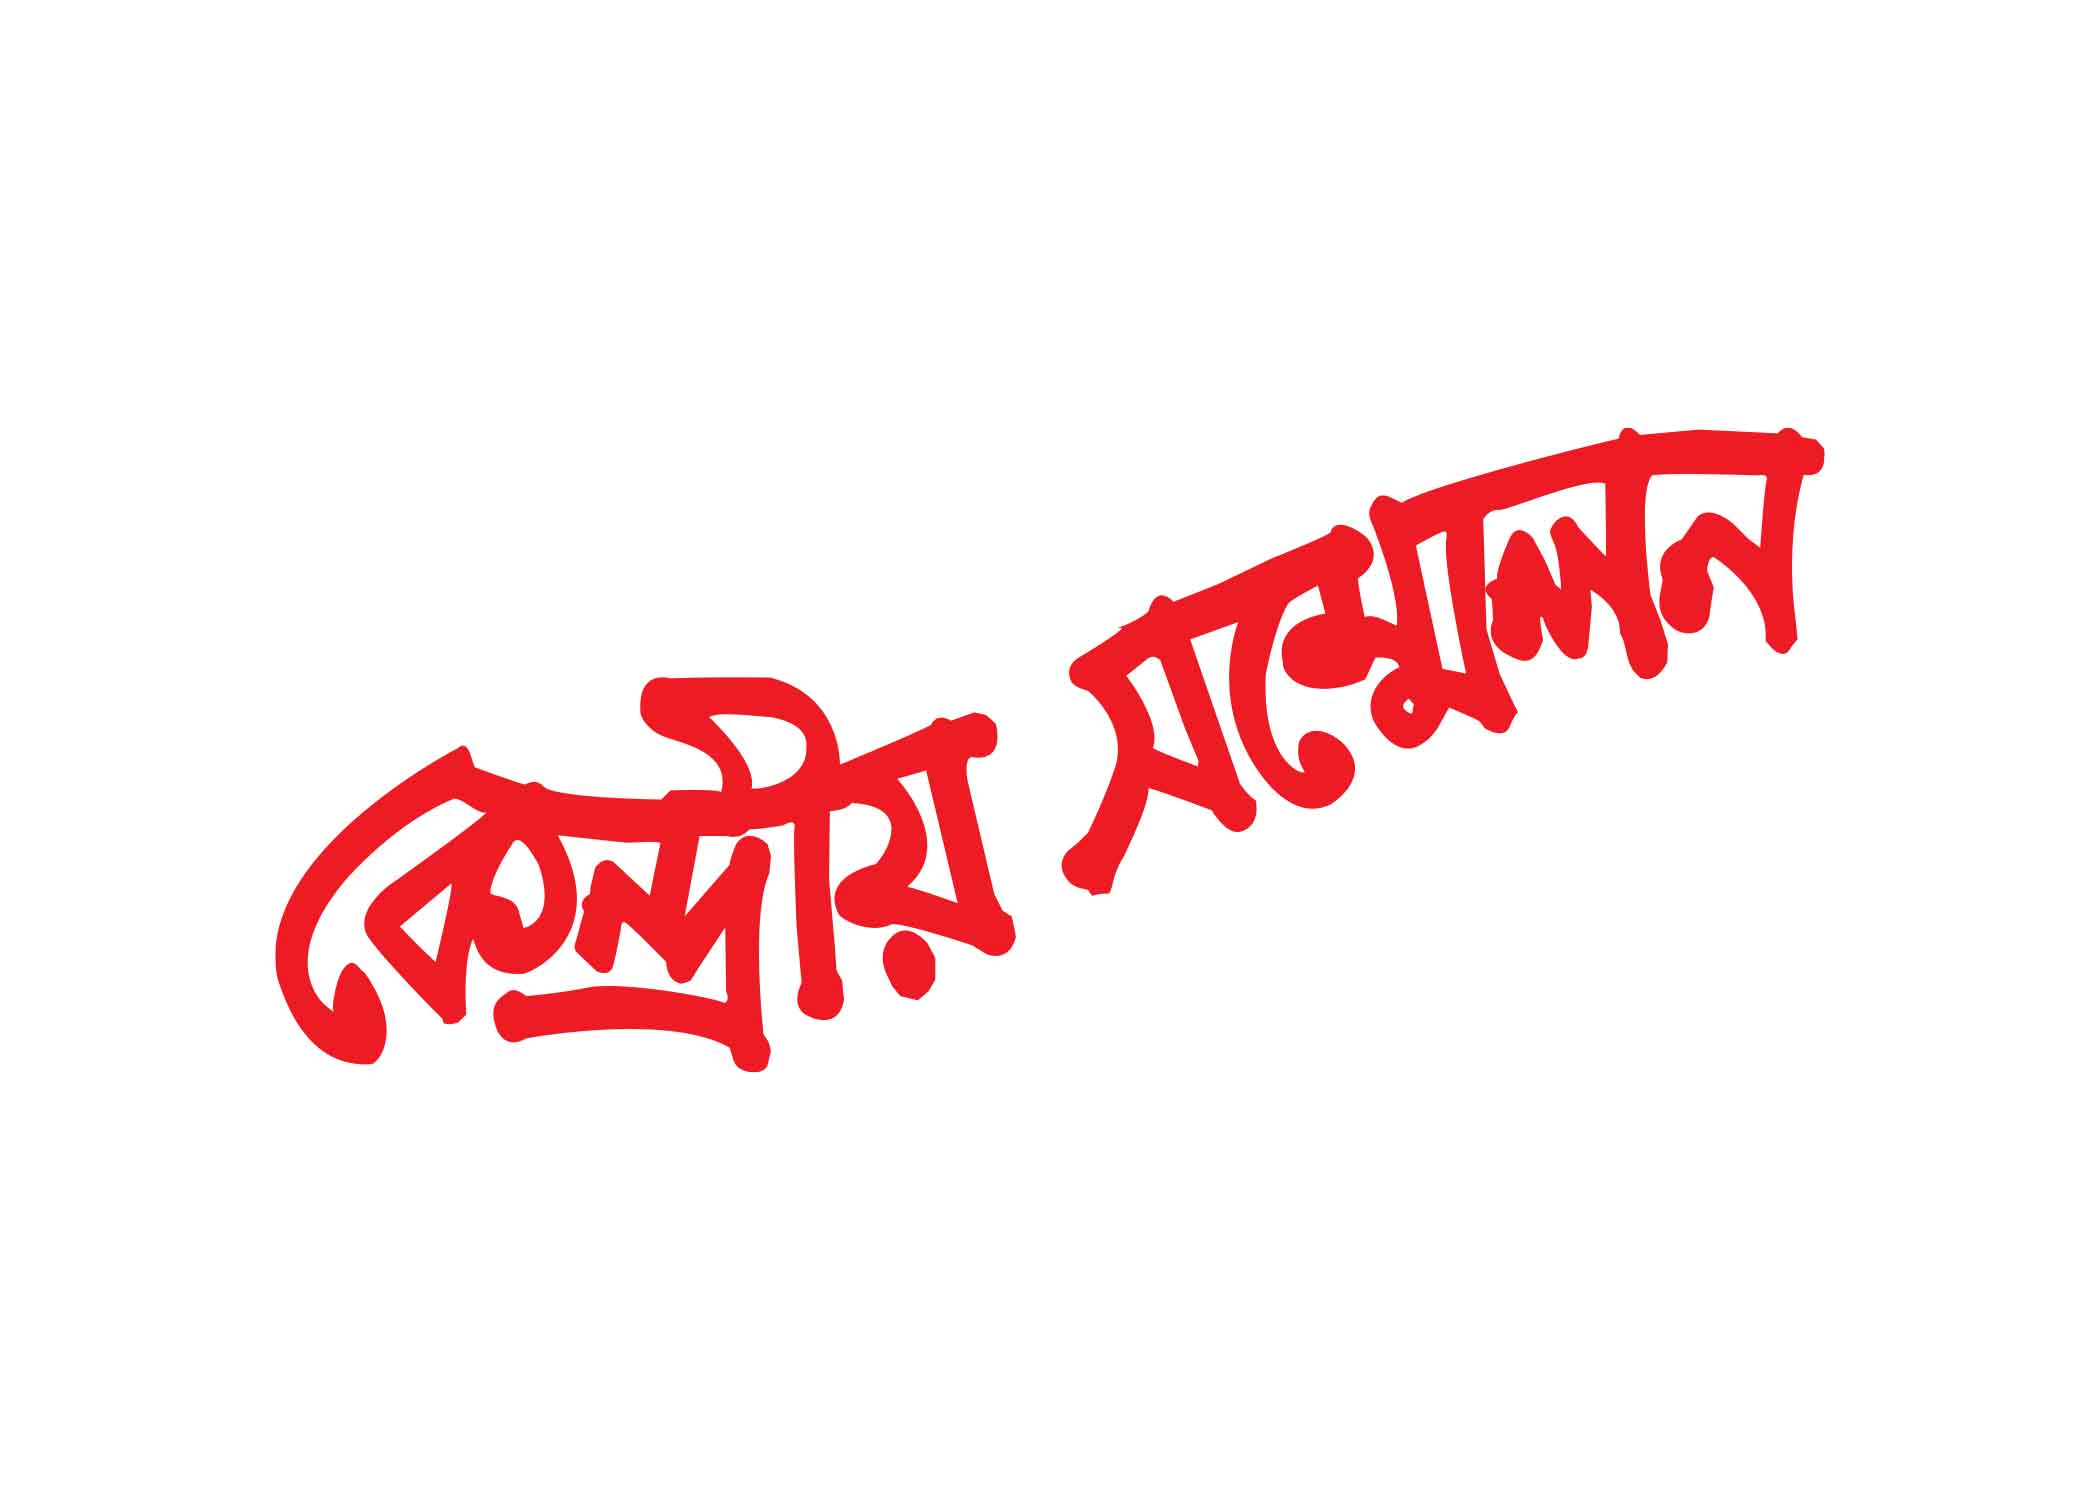 কেন্দ্রীয় সম্মেলন টাইপোগ্রাফি । Bangla Typhography PNG